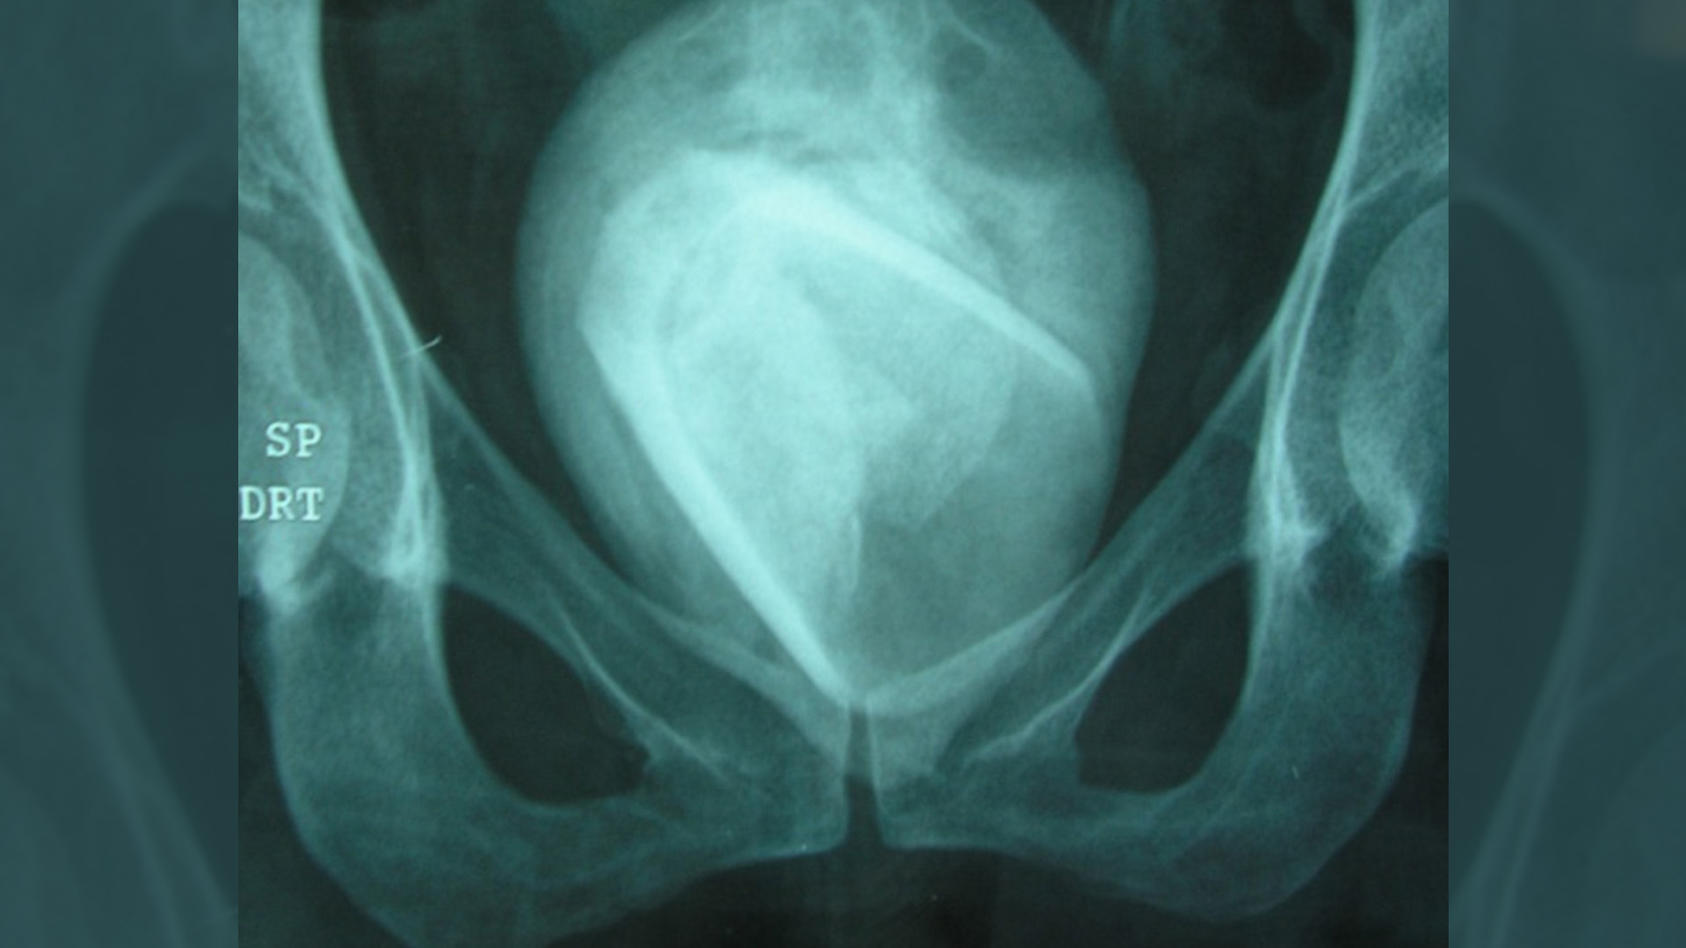 Ein Röntgenbild zeigt einen Fremdkörper in der Form eines Trinkglases, das von einem Blasenstein umhüllt ist